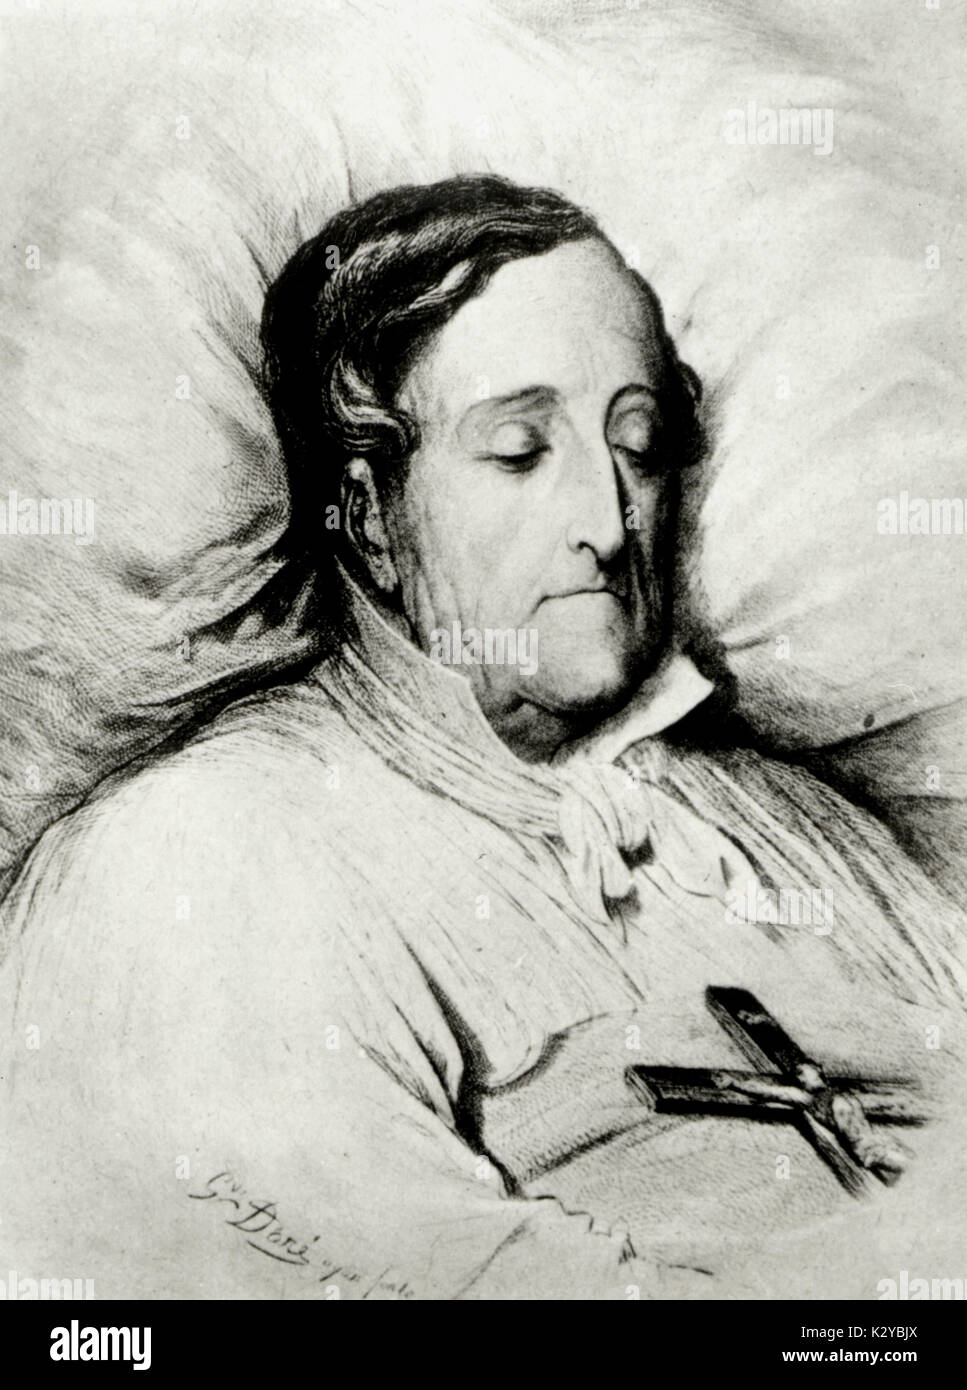 ROSSINI, en su lecho de muerte por Gustav Doré compositor italiano (1792-1868) Foto de stock